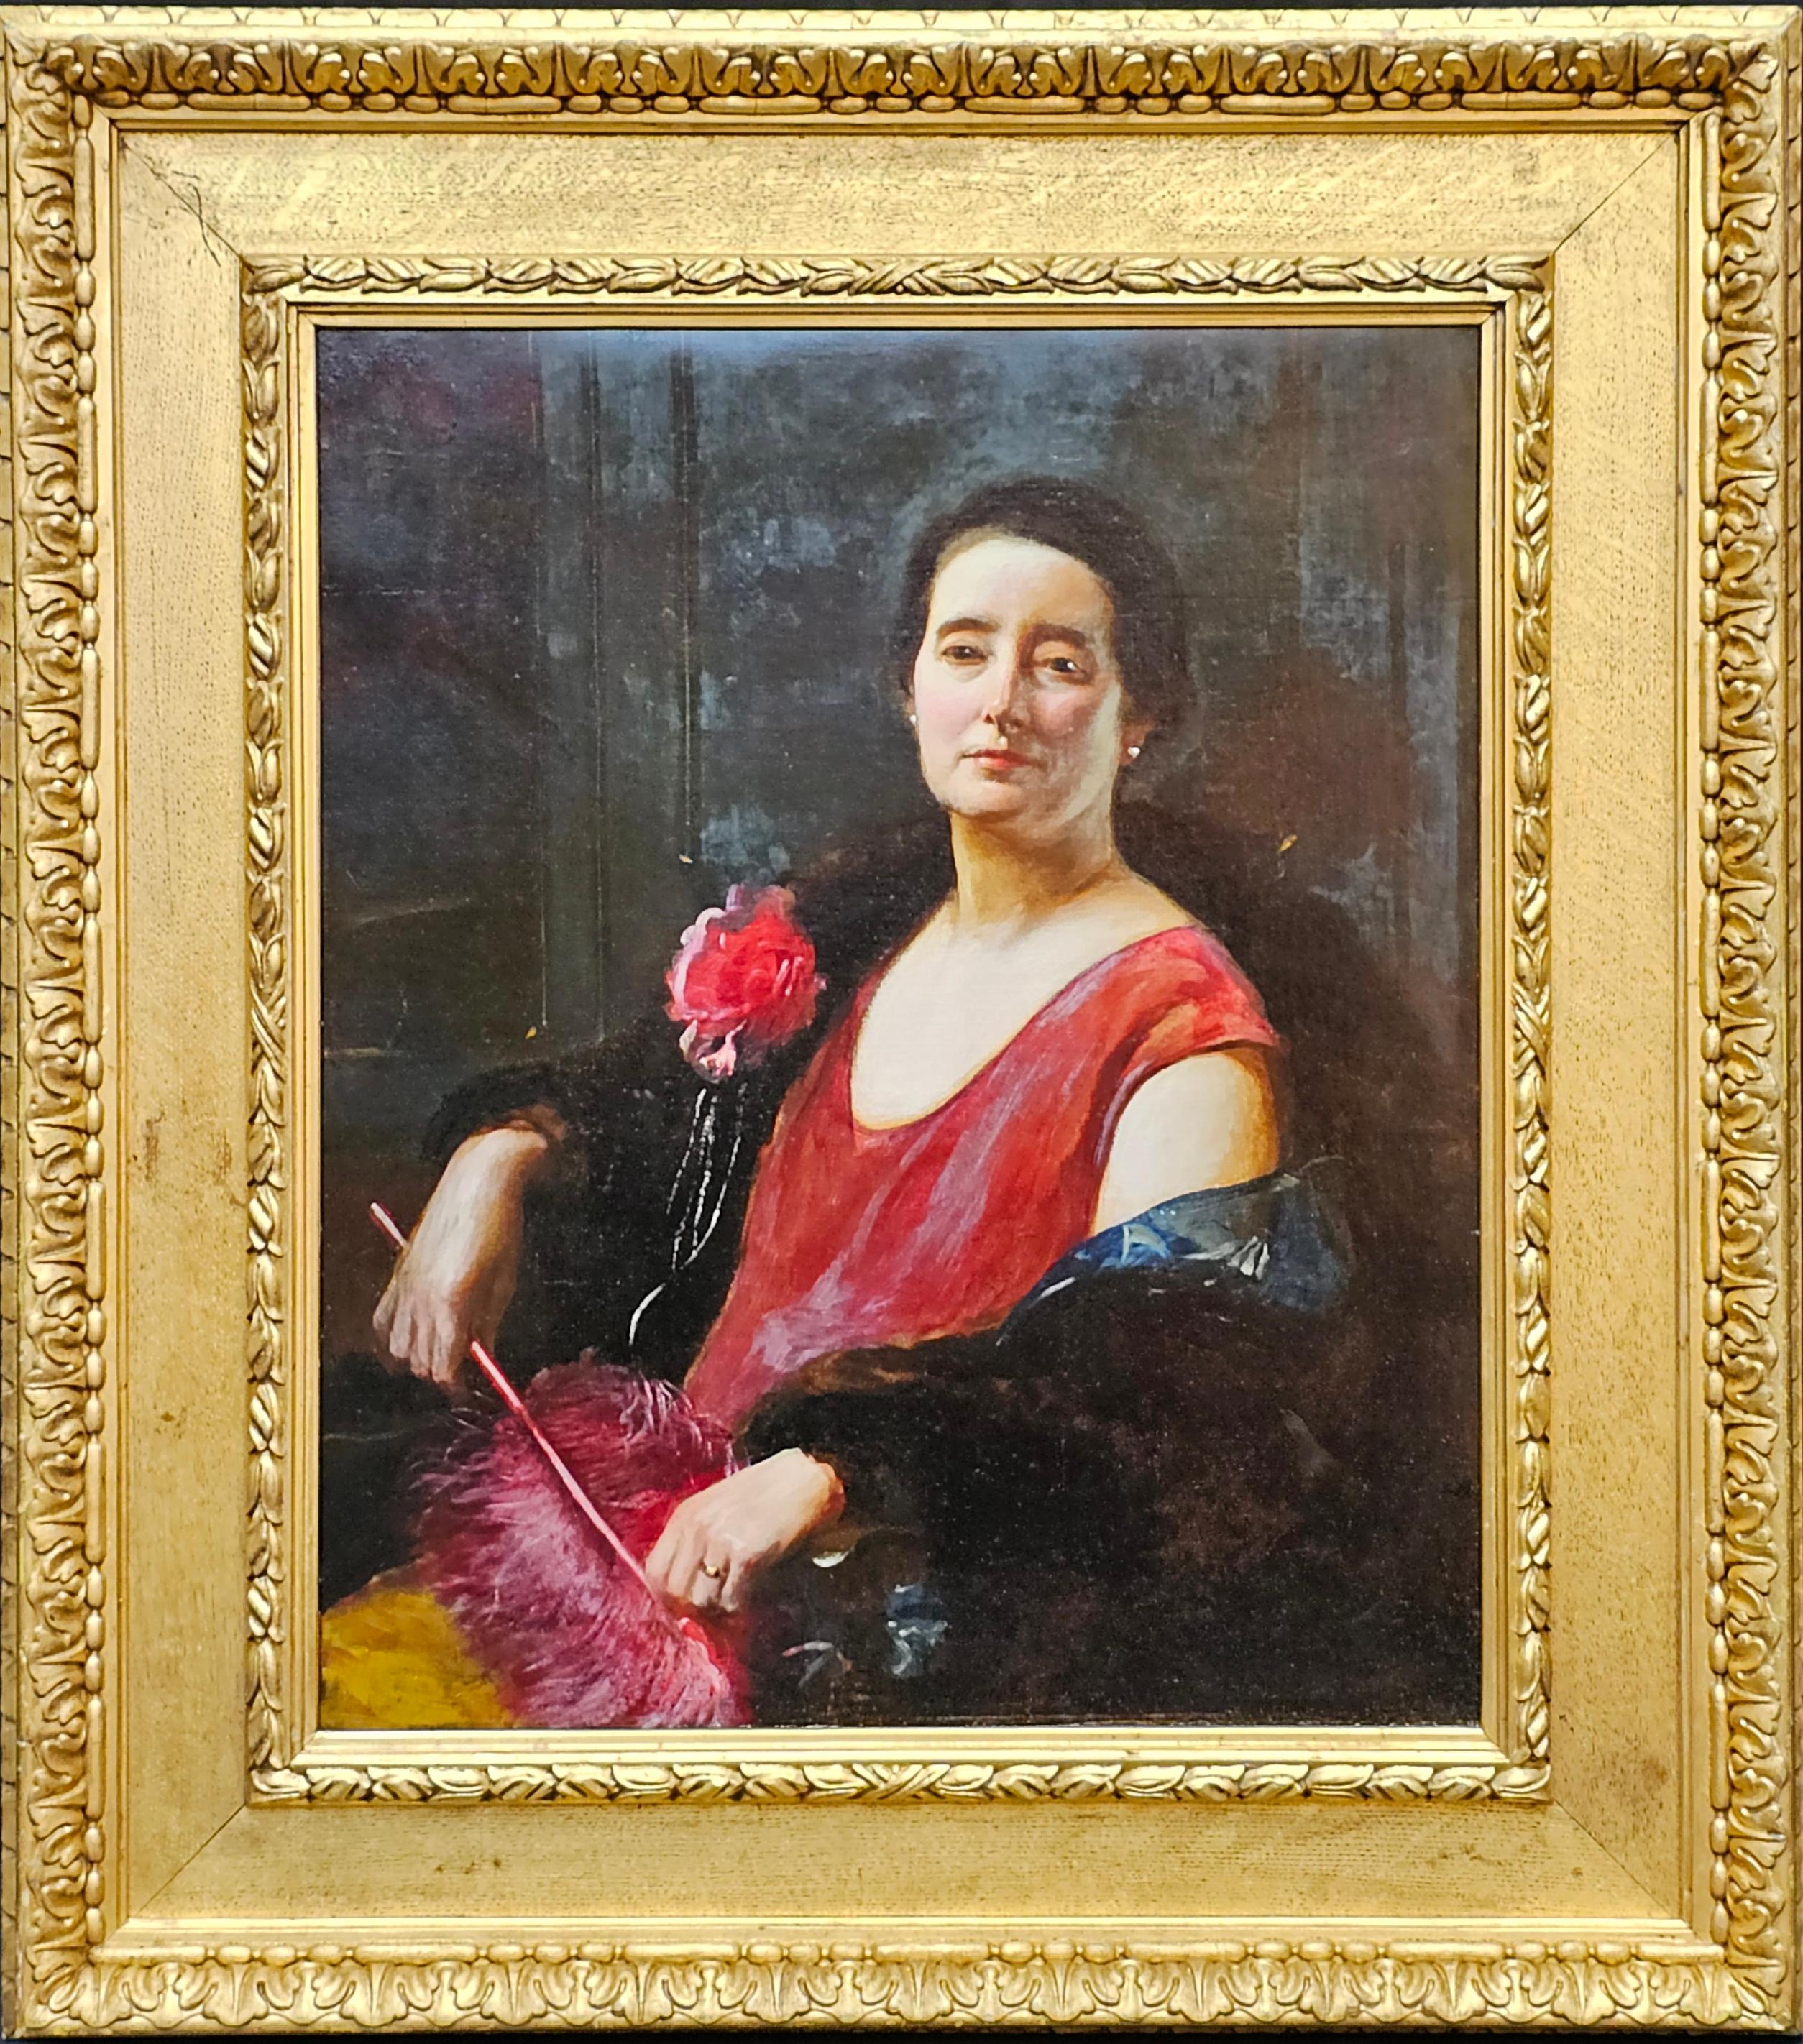 John Singer Sargent Portrait Painting - Portrait of an Edwardian Lady - British American art portrait oil painting